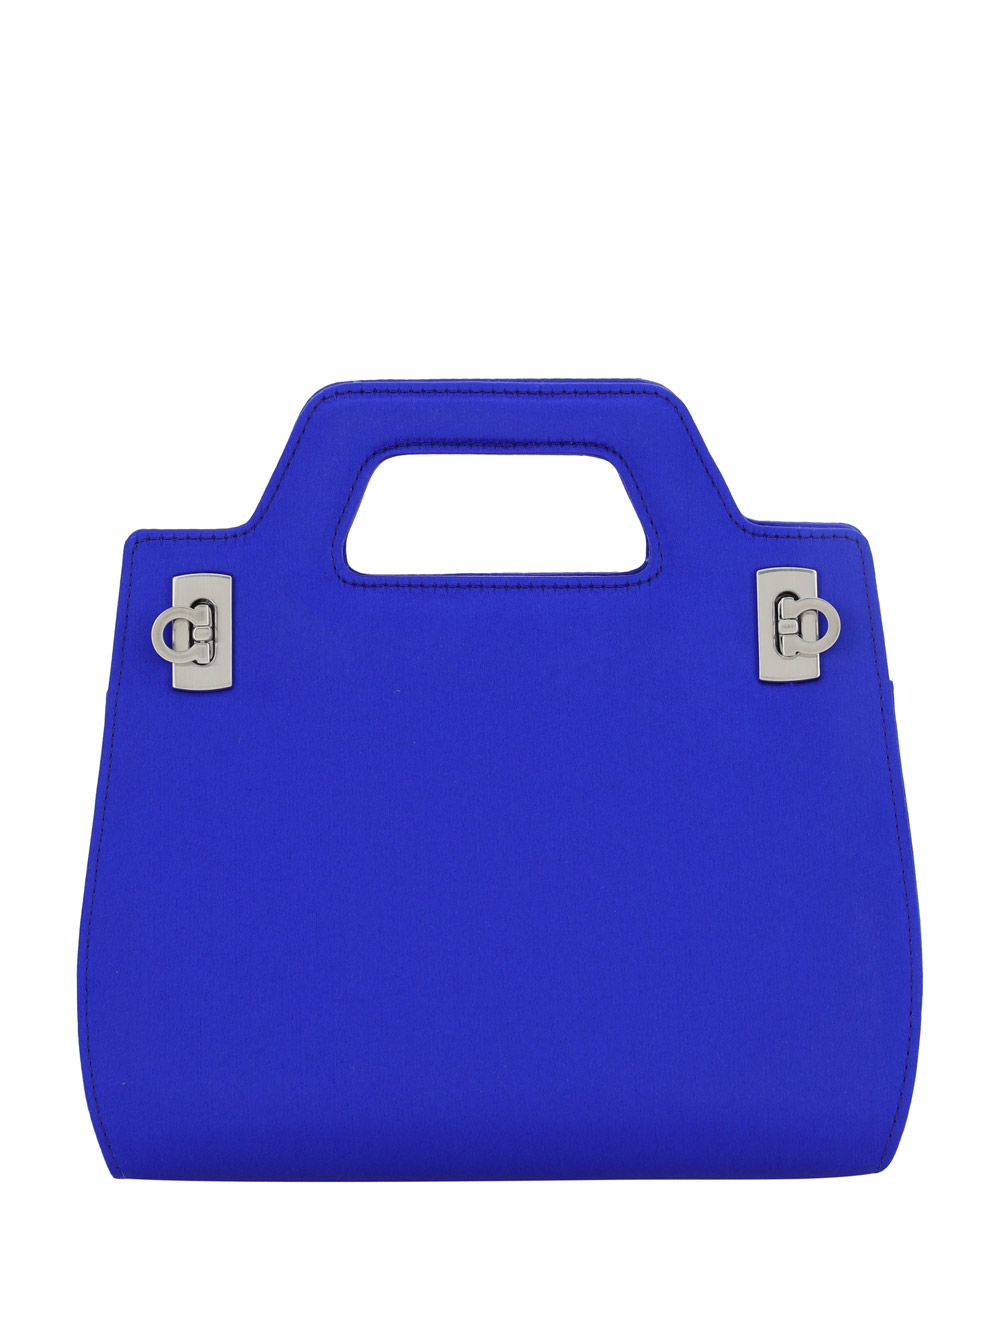 Salvatore Ferragamo Wanda Mini Handbag In Multicolor